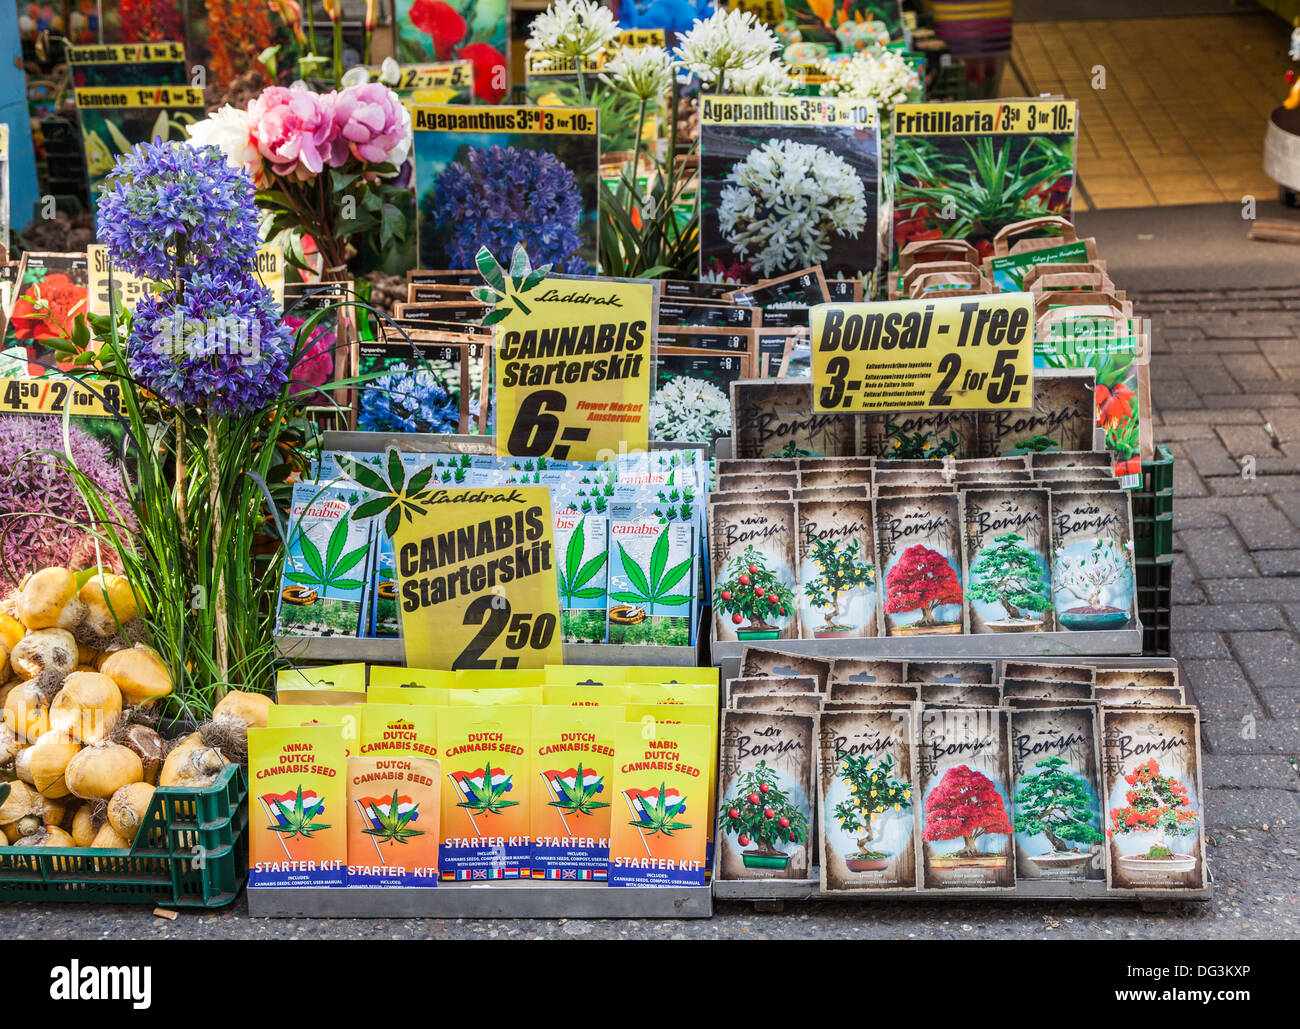 Cannabis-Samen in der Blume Markt, Amsterdam, Holland - Cannabis-Starter-Kit - mit anderen Paketen Samen verkauft Stockfoto